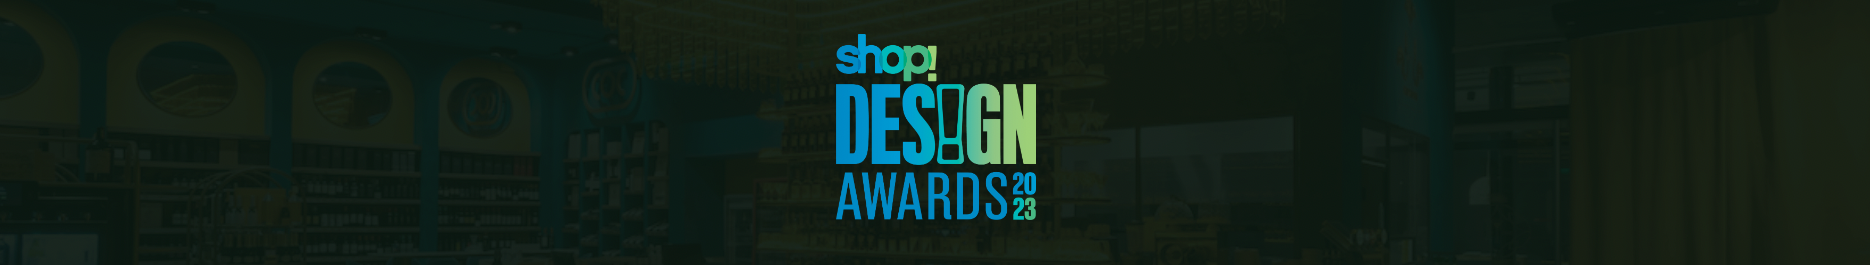 shop awards banner